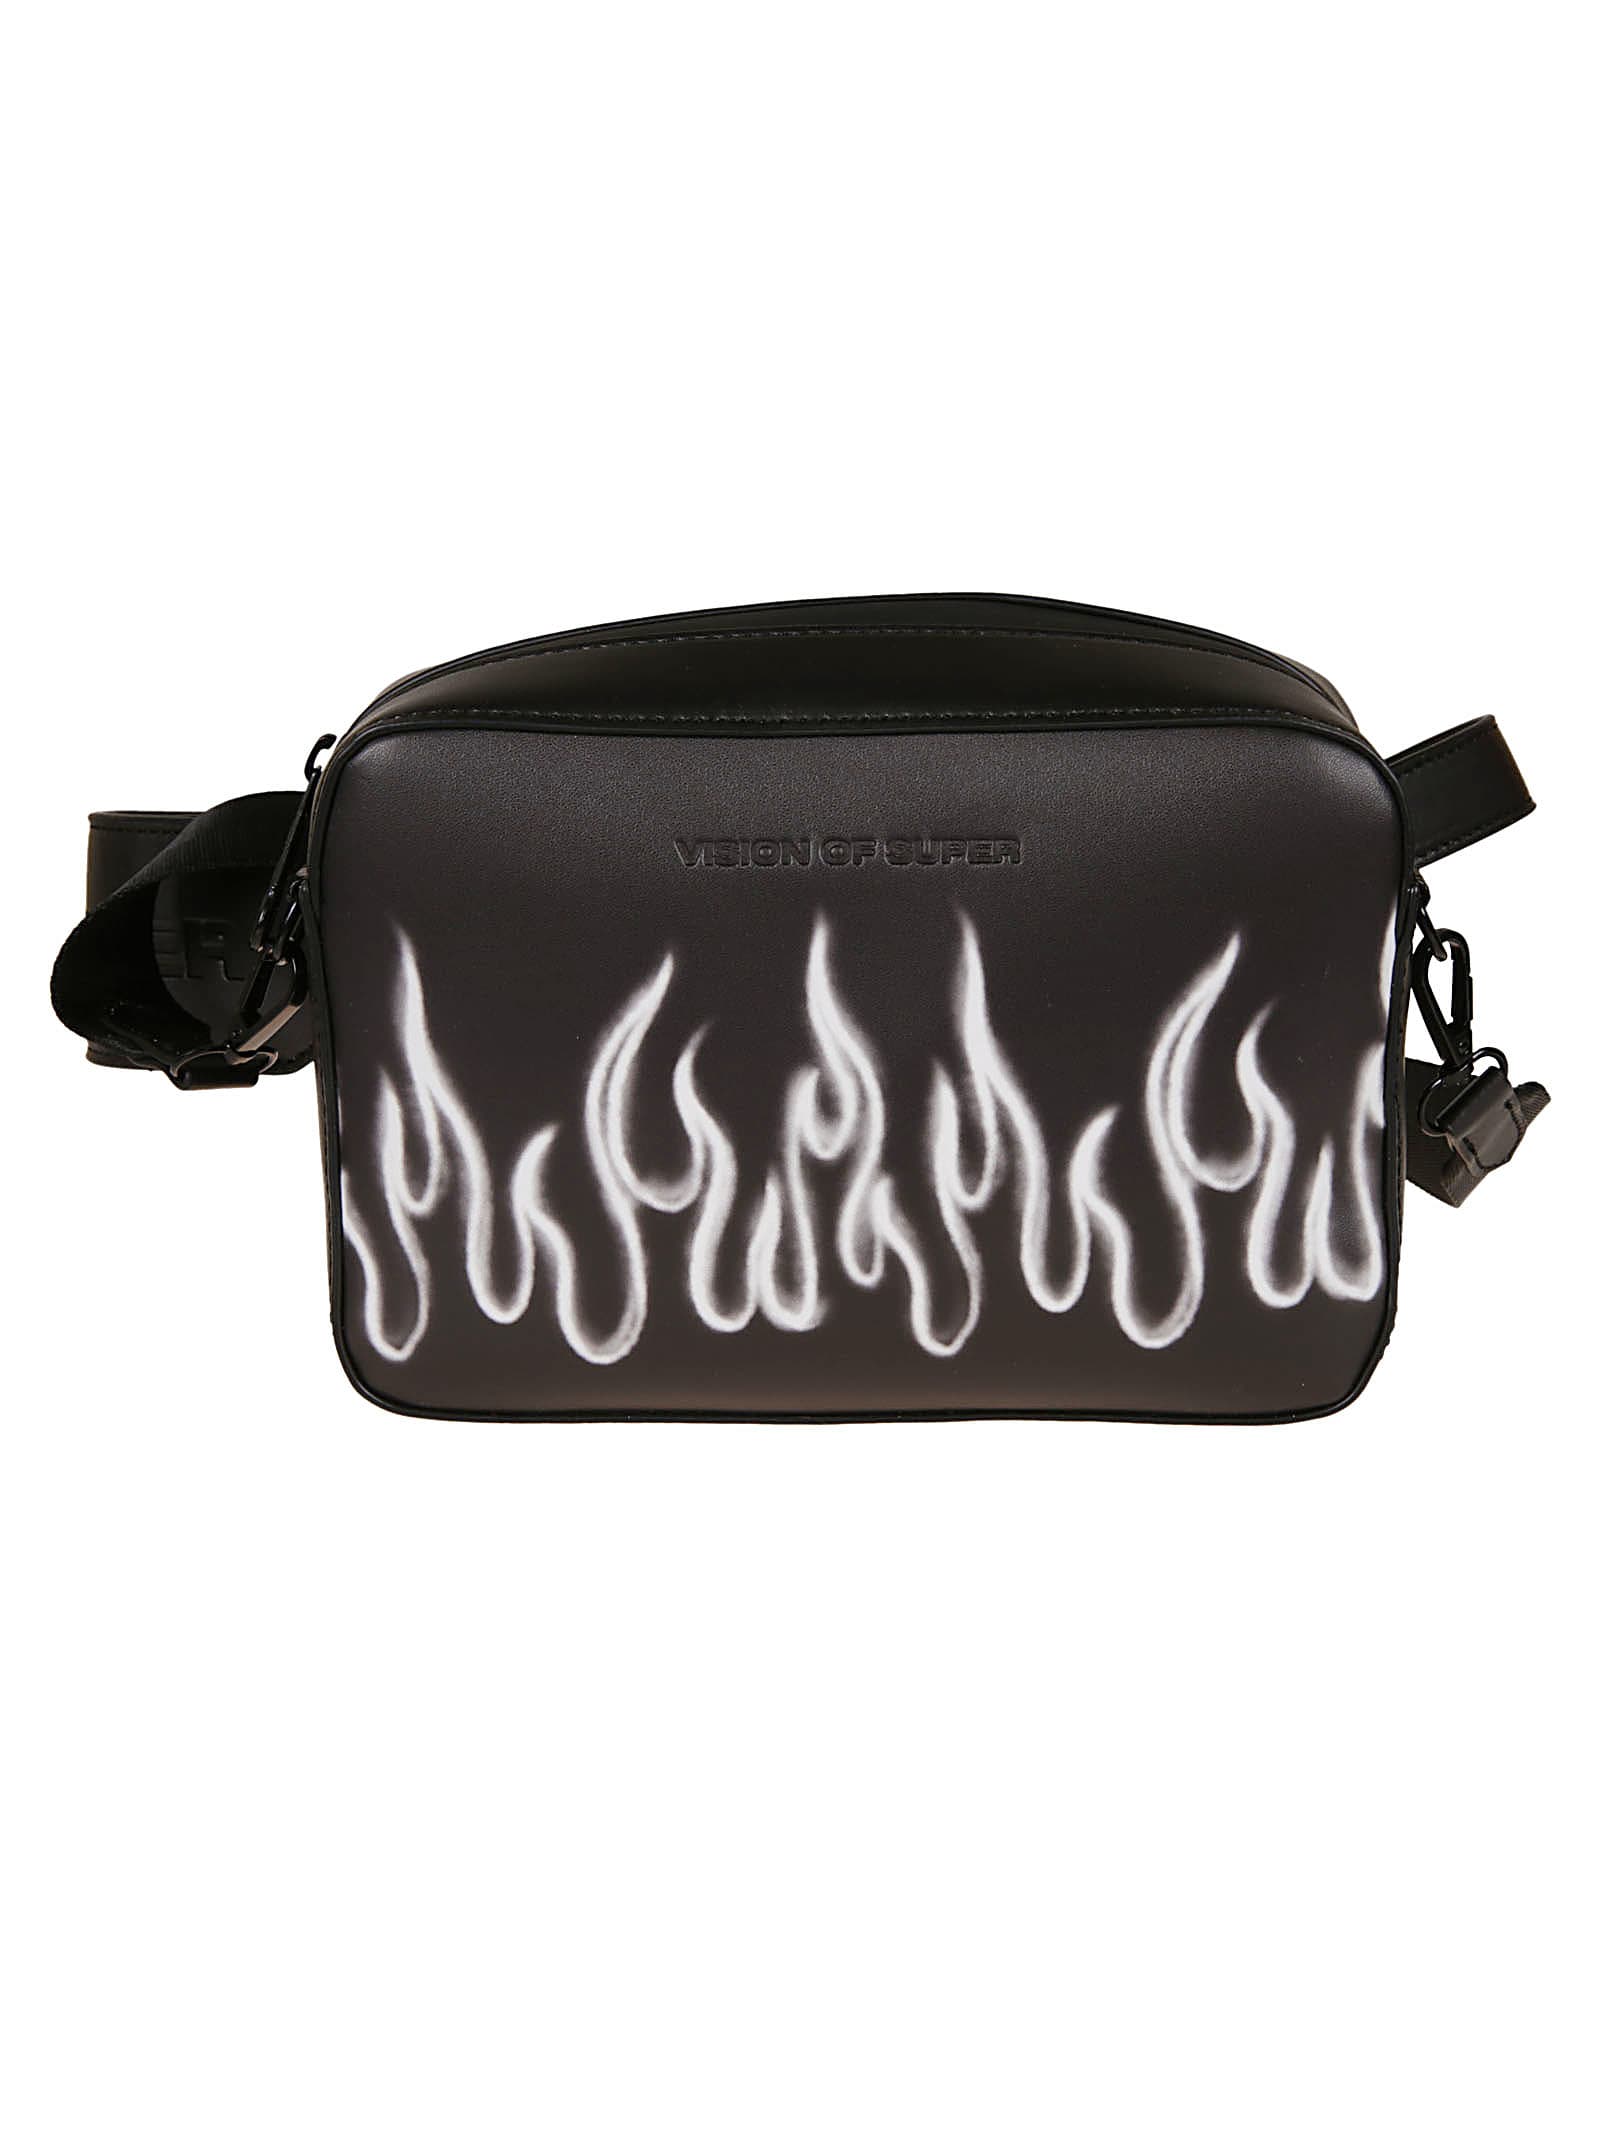 Vision of Super Flame Shoulder Bag